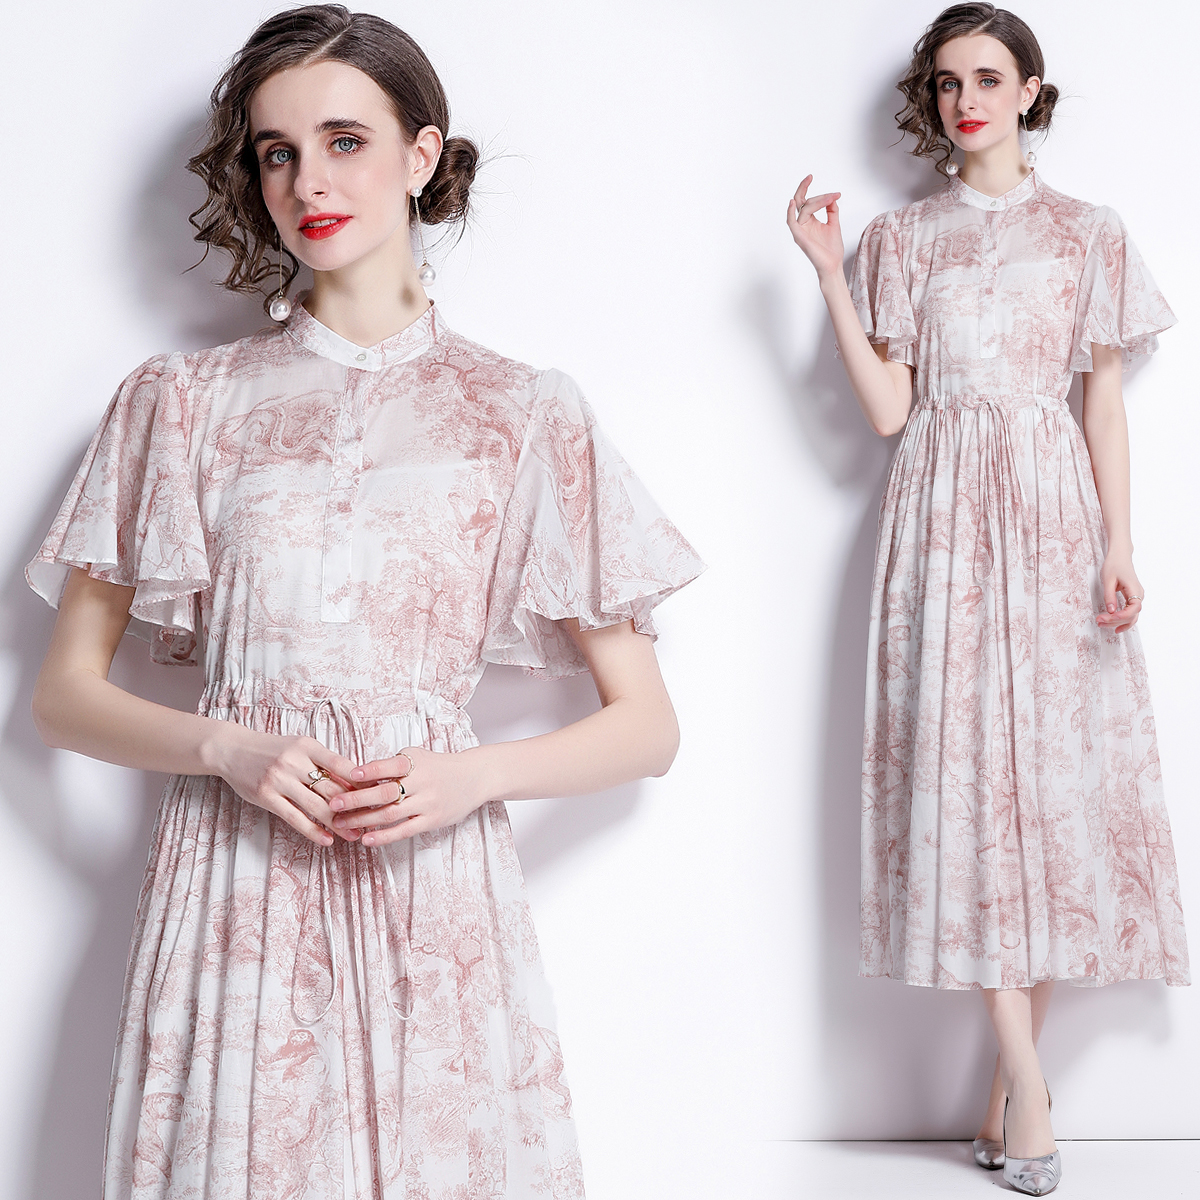 Long cotton spring pattern printing drawstring dress